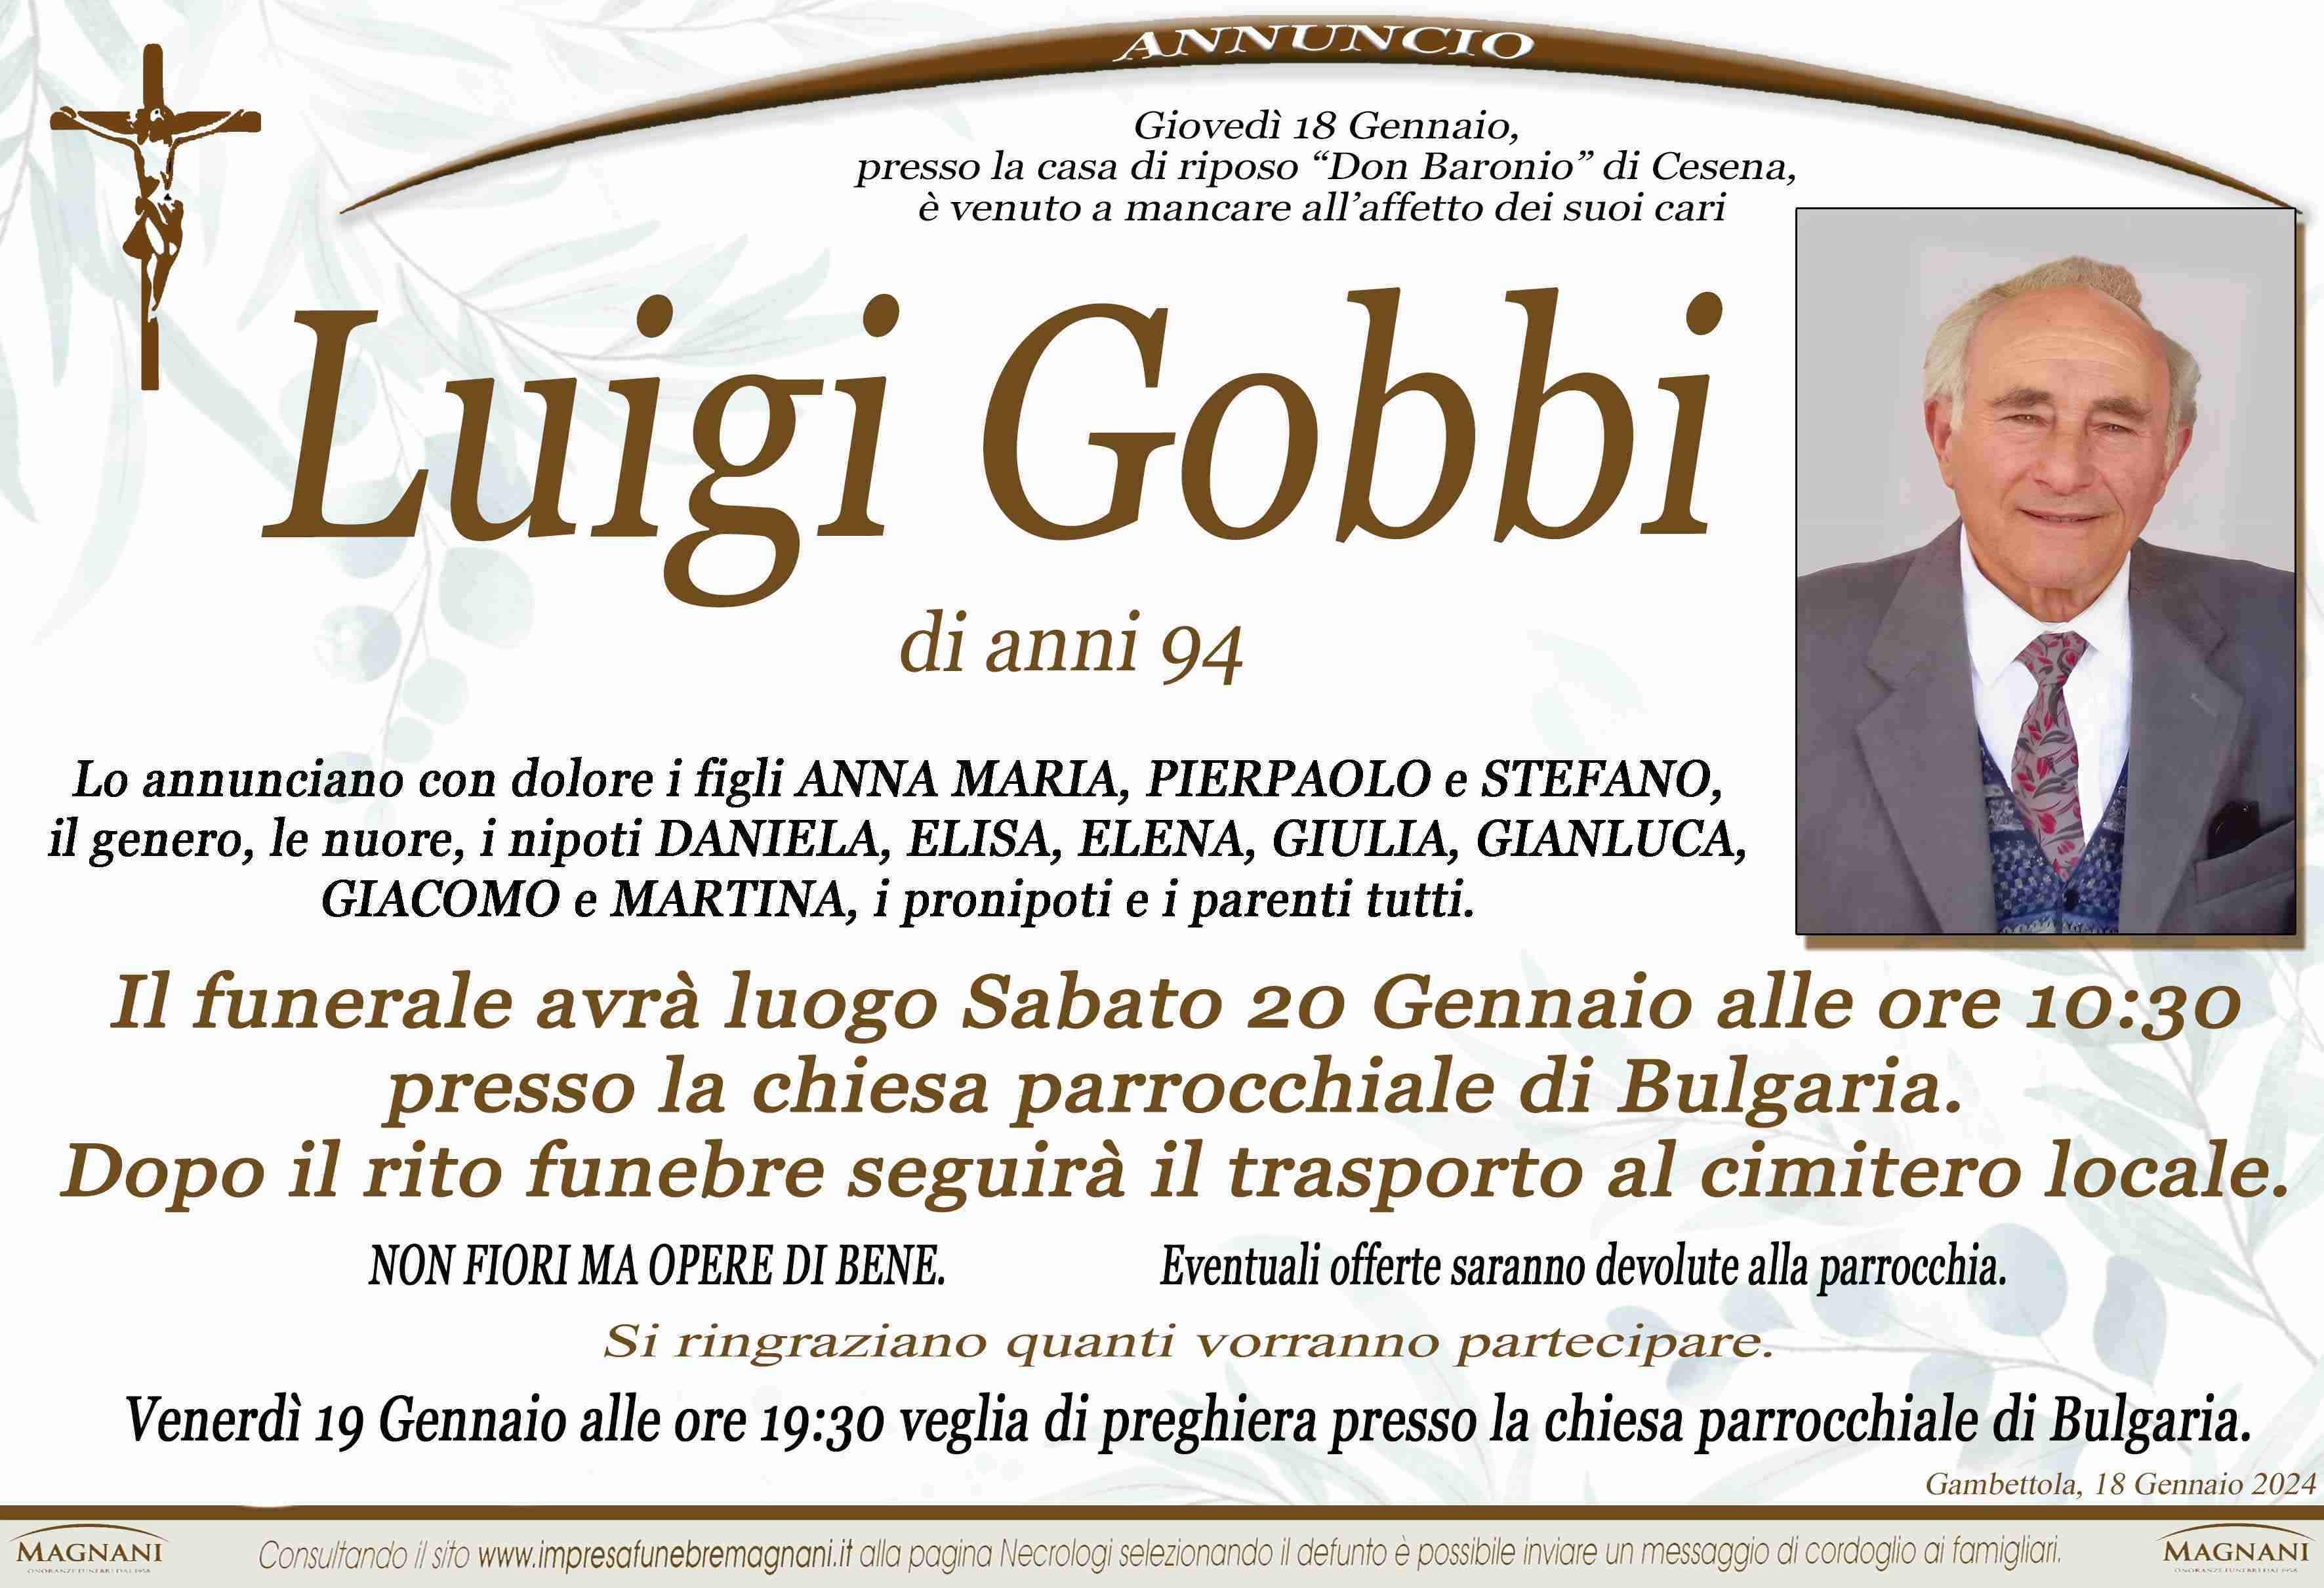 Luigi Gobbi